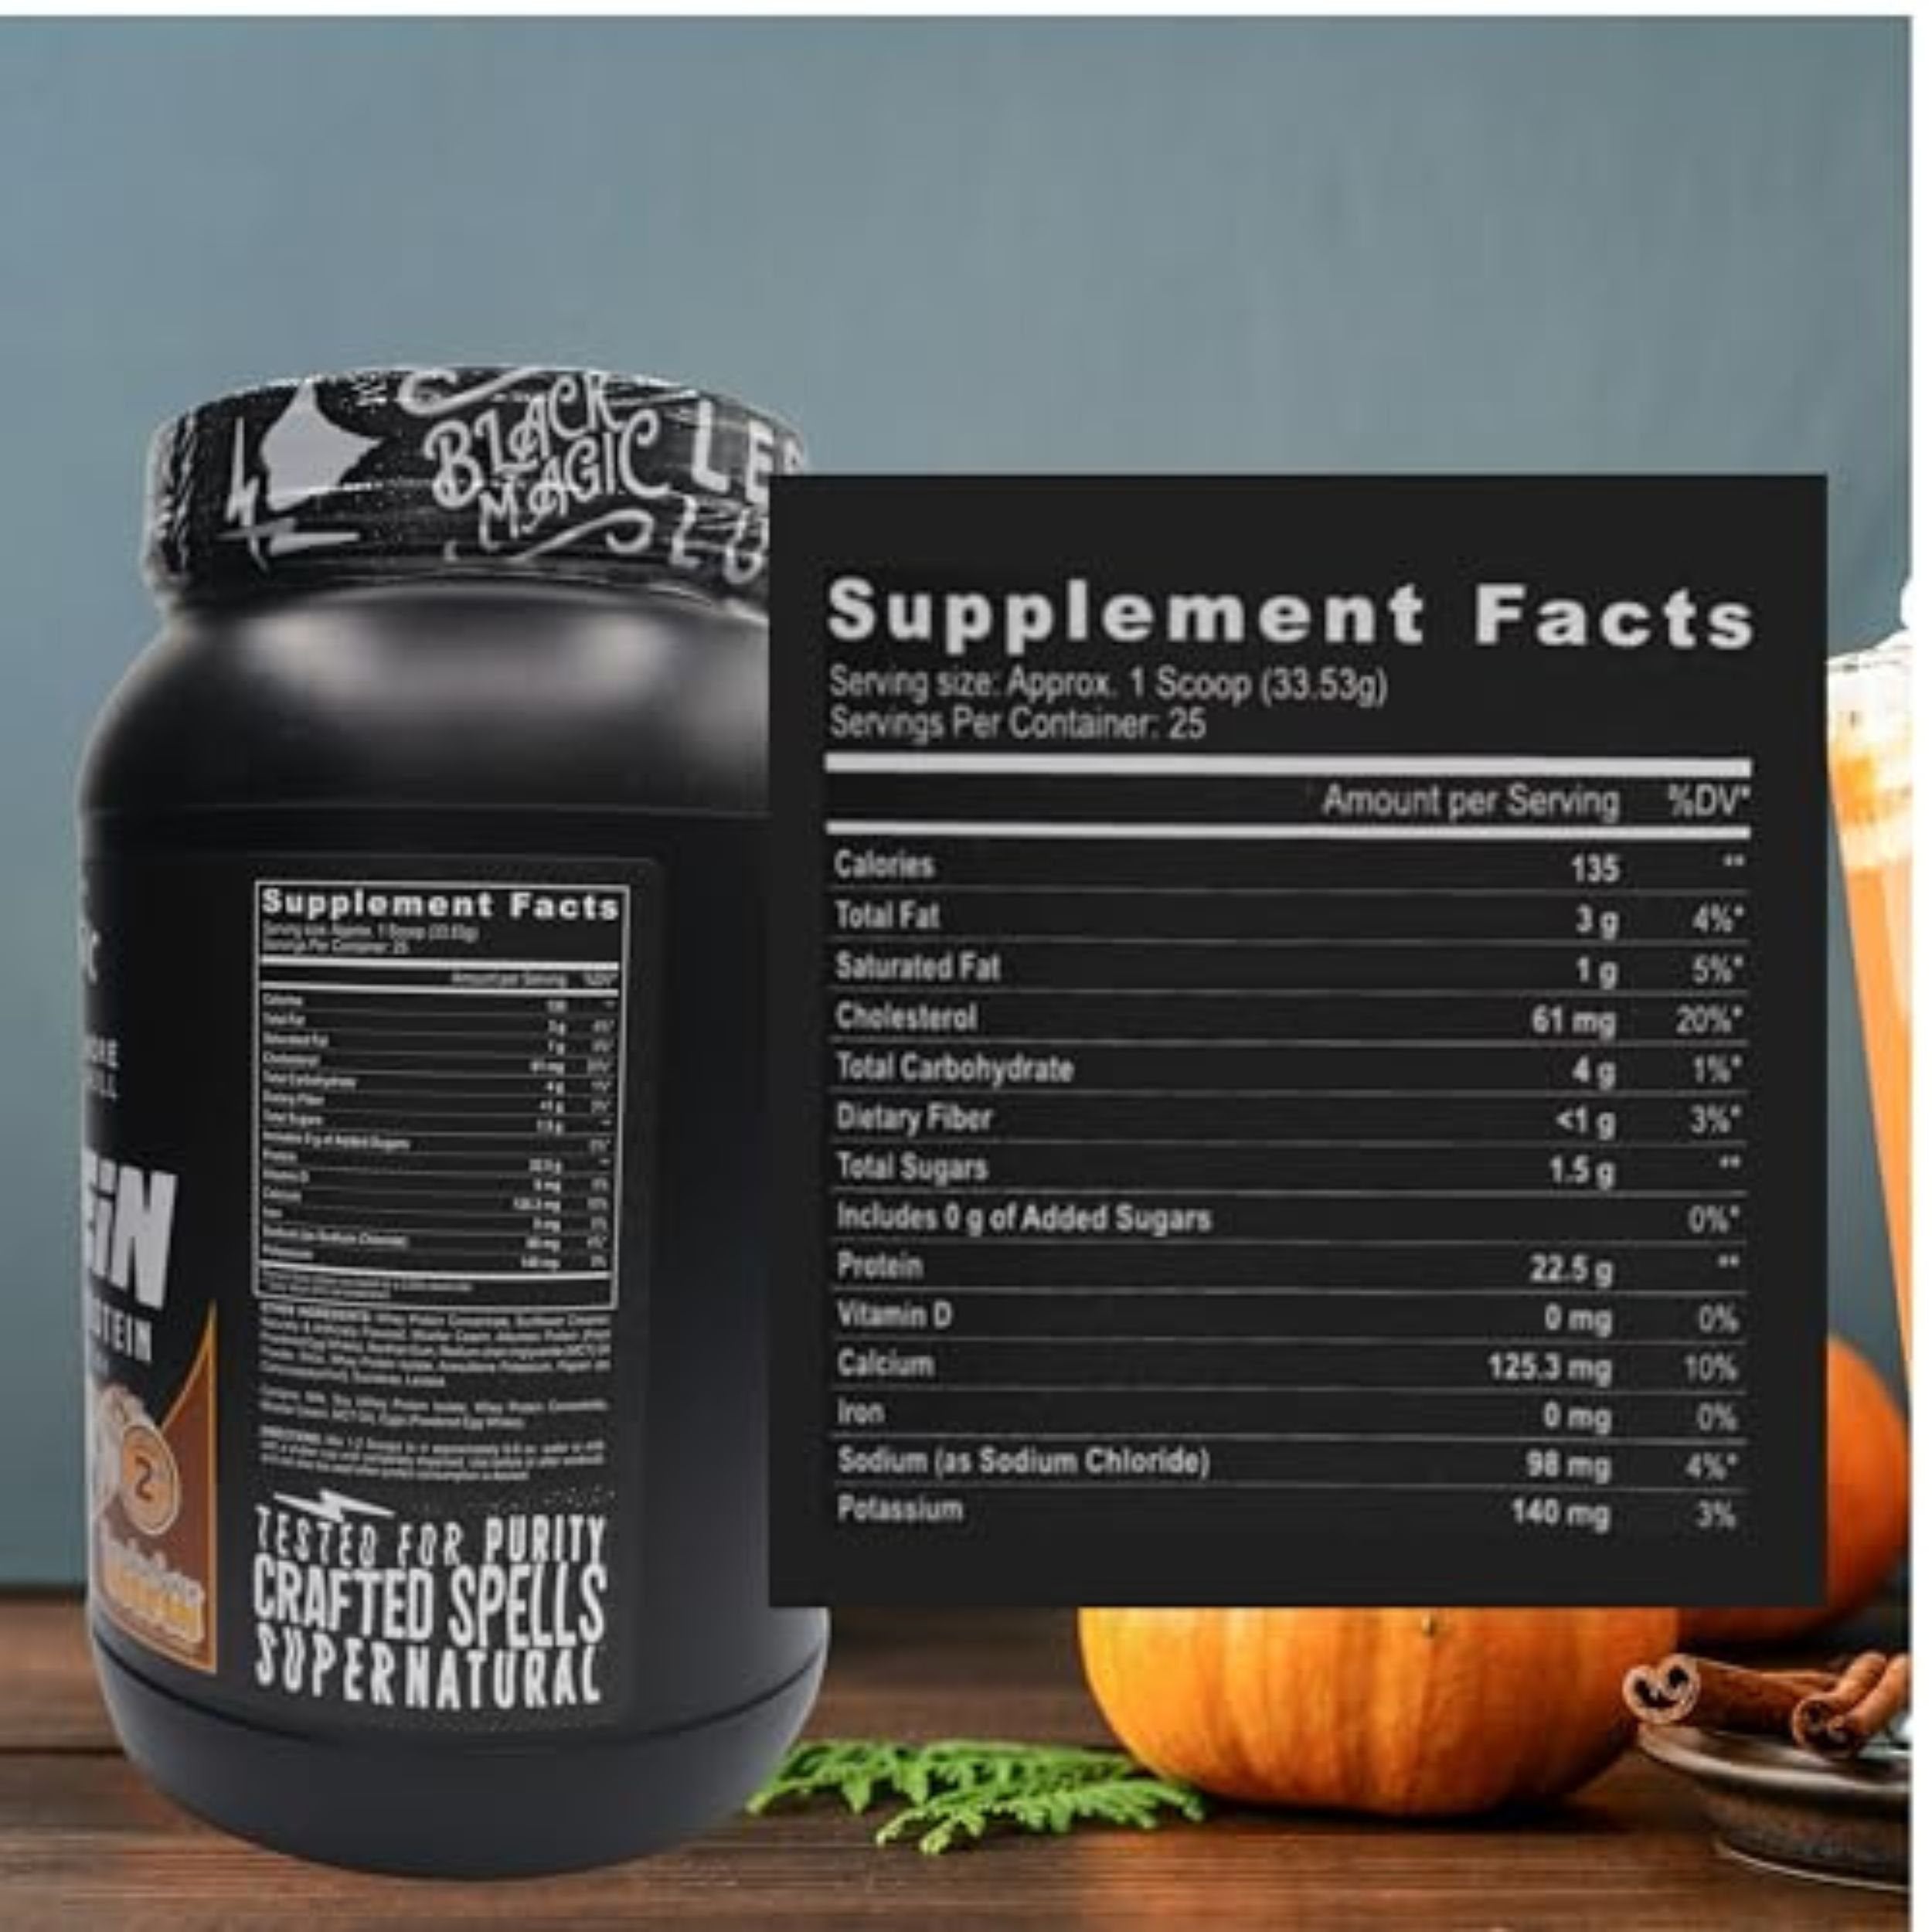 Black Magic Multi Source Protein Powder - Pumpkin Spice Muffin Flavor -  2lb